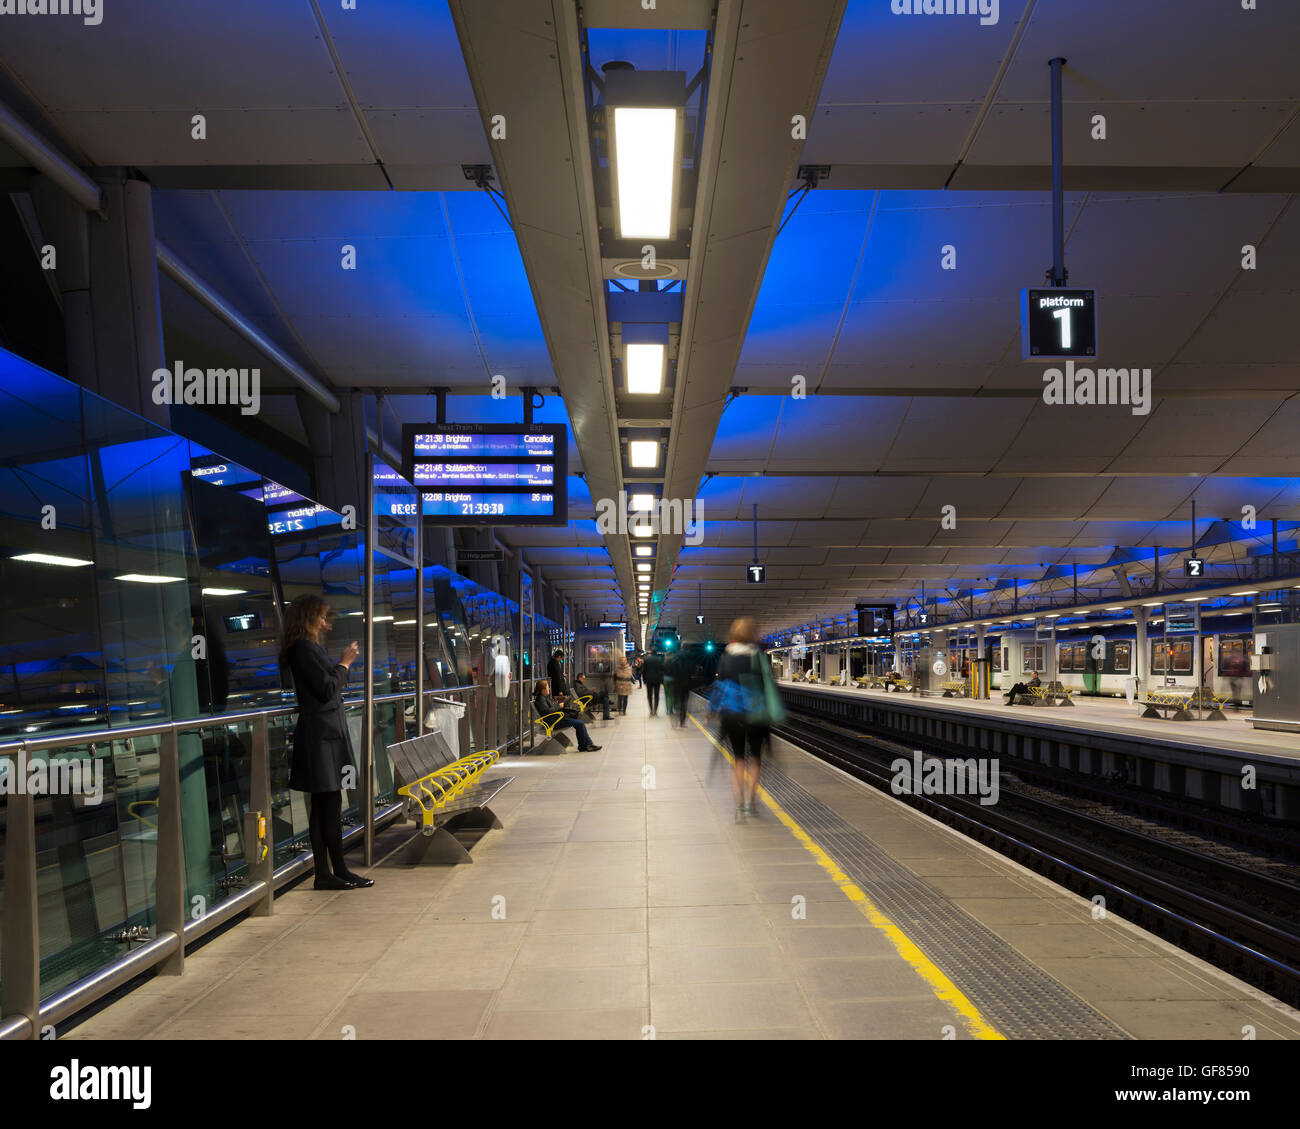 View along platform with passengers. Blackfriars Station, London, United Kingdom. Architect: Pascall+Watson architects Ltd, 2012. Stock Photo